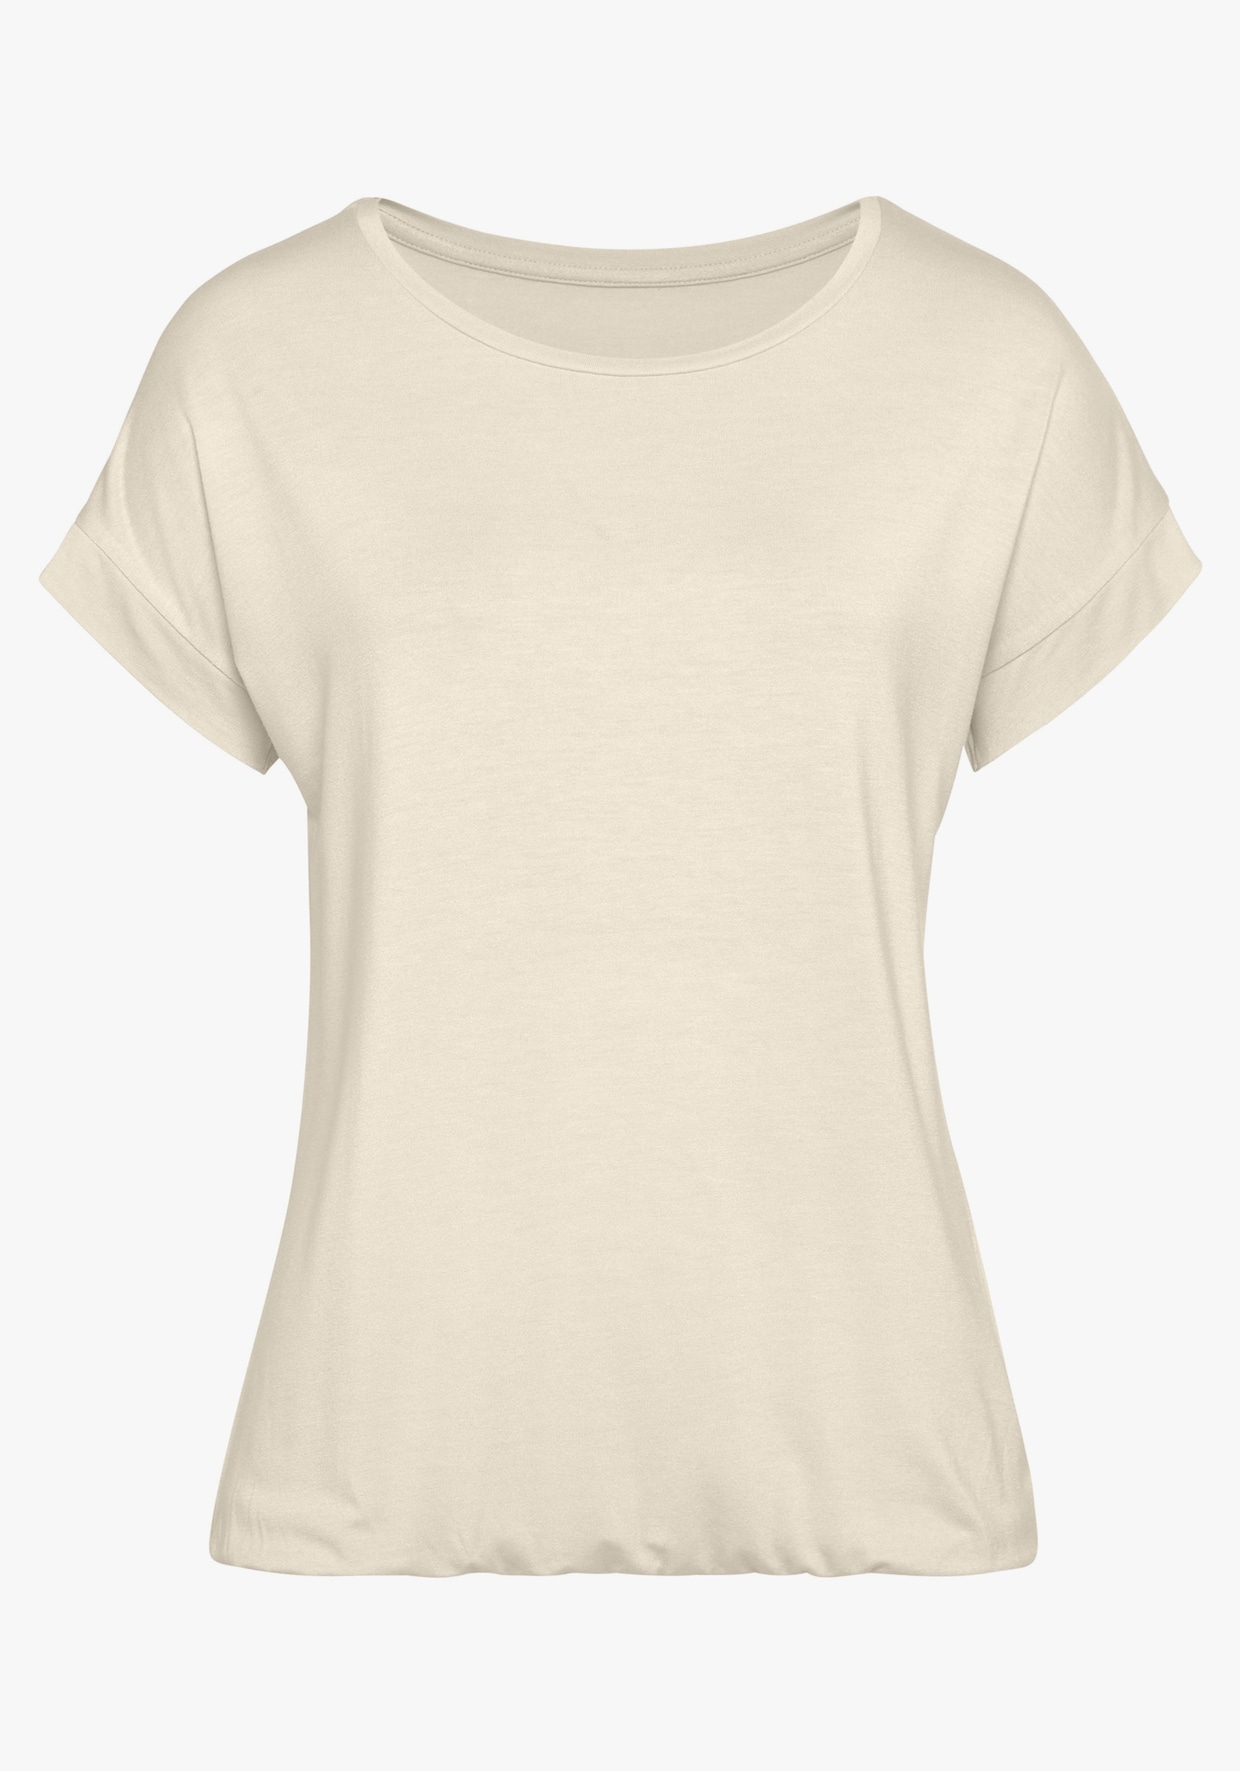 Vivance T-Shirt - beige, khaki